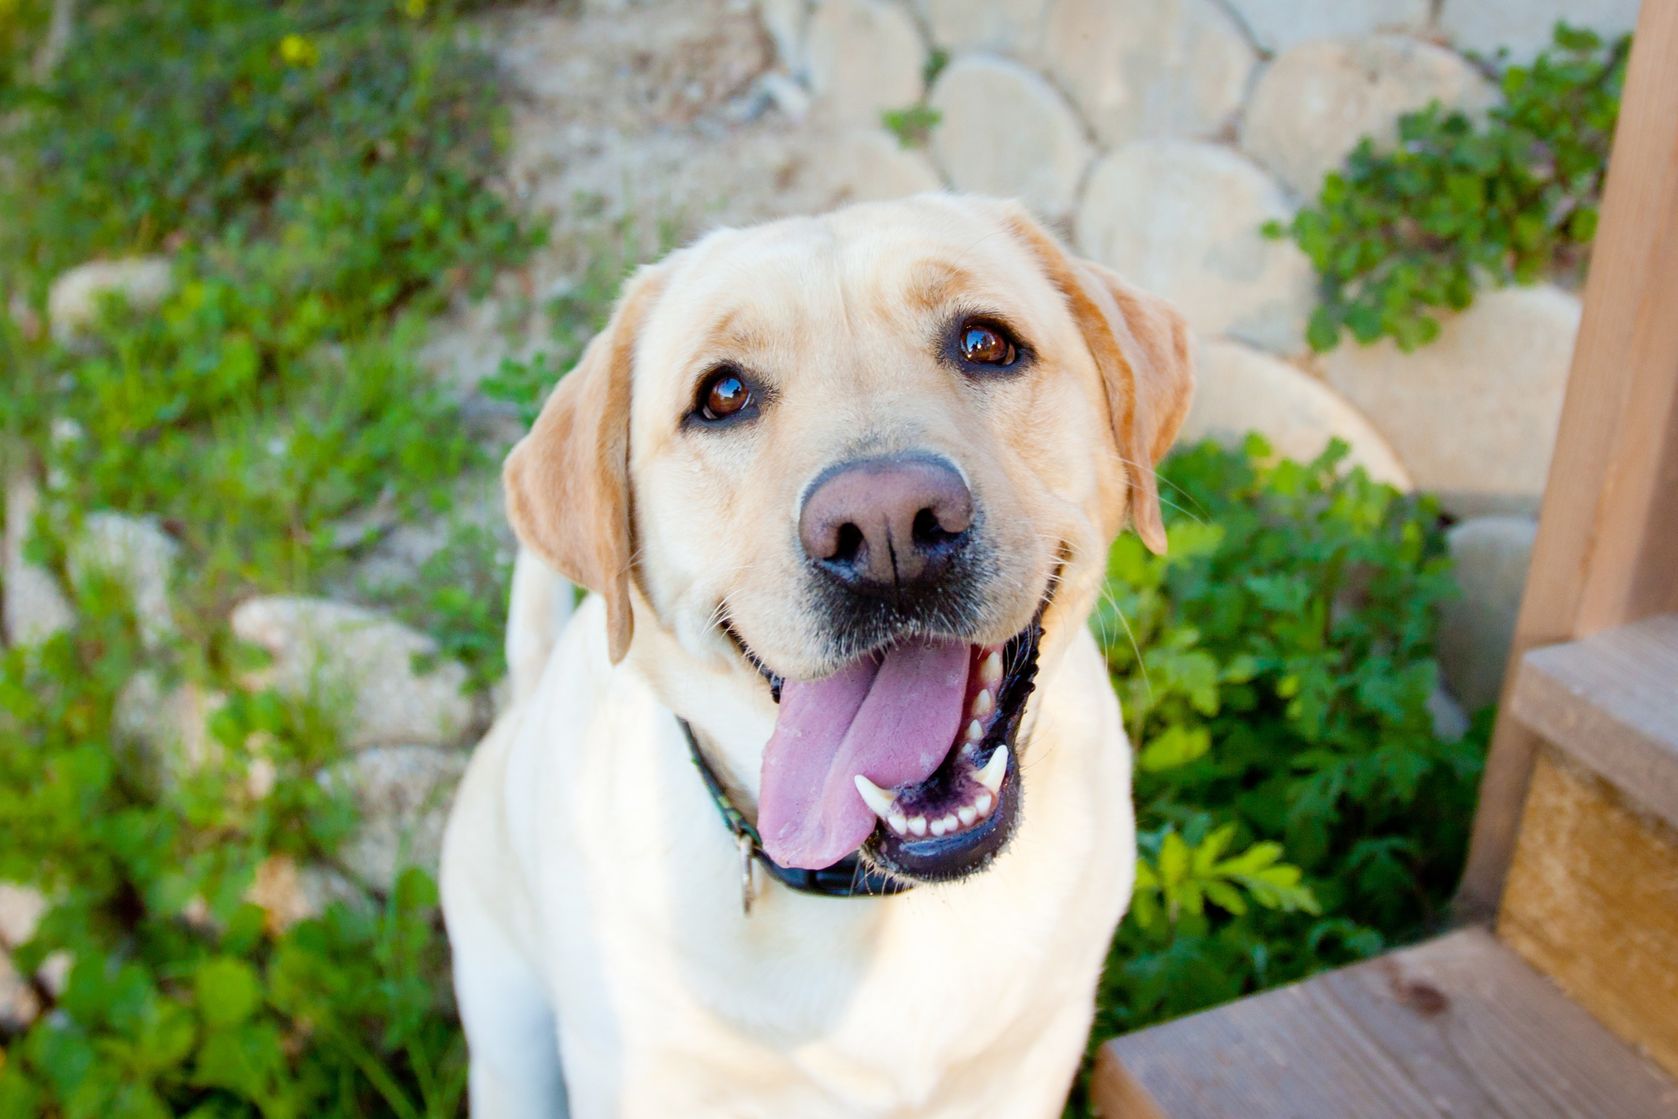 A very happy labrador dog